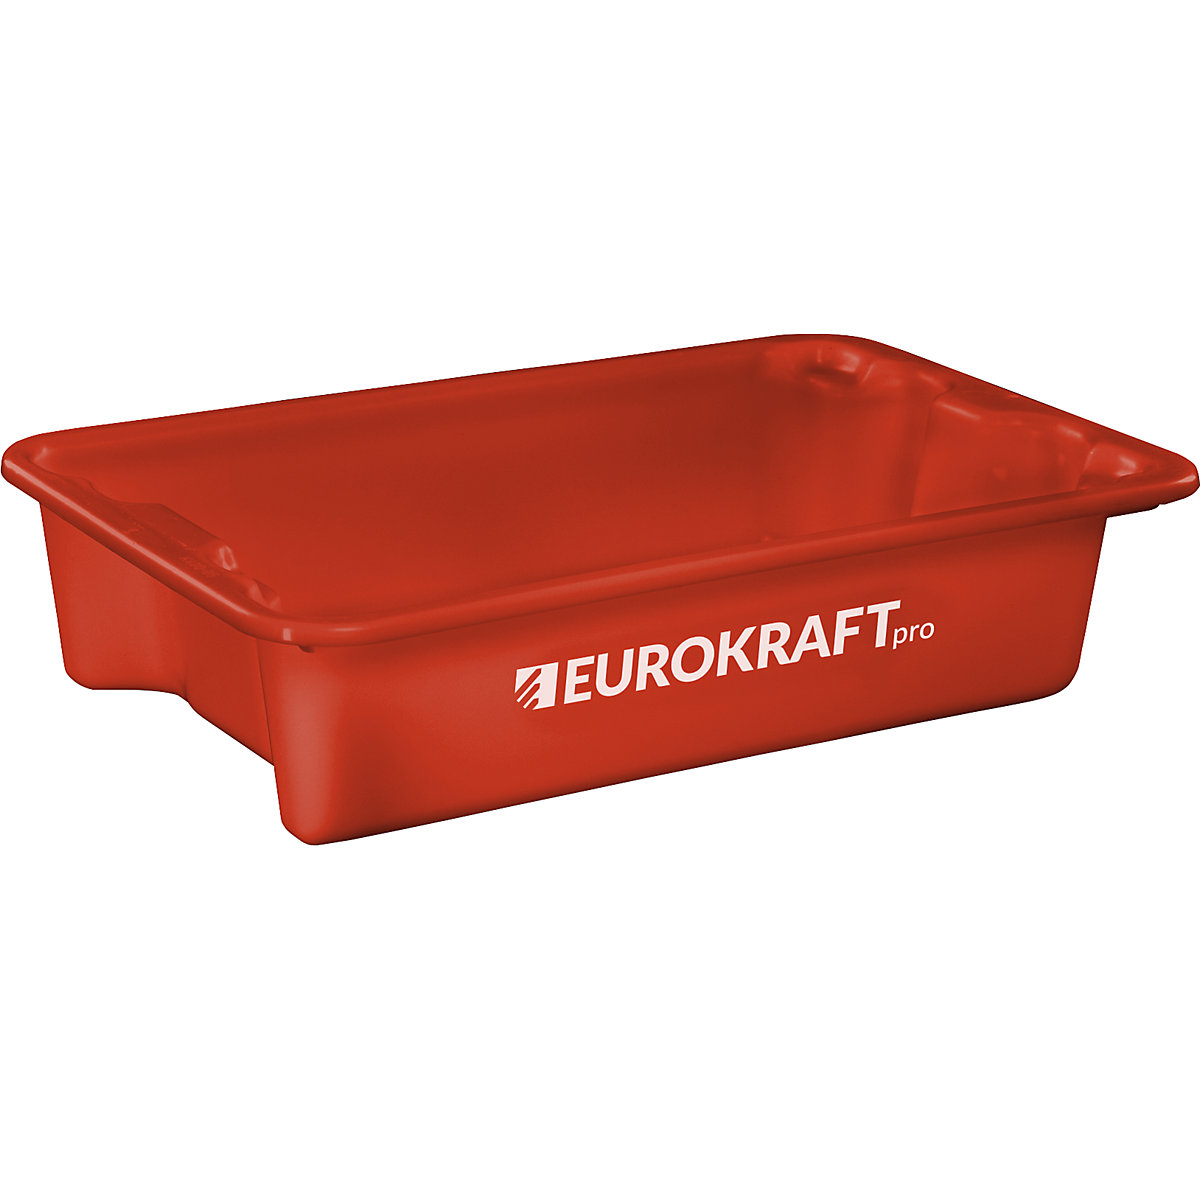 EUROKRAFTpro – Obrotowy pojemnik do ustawiania w stos z polipropylenu dopuszczonego do kontaktu z żywnością, poj. 18 l, opak. 3 szt., ścianki i dno zamknięte, czerwone